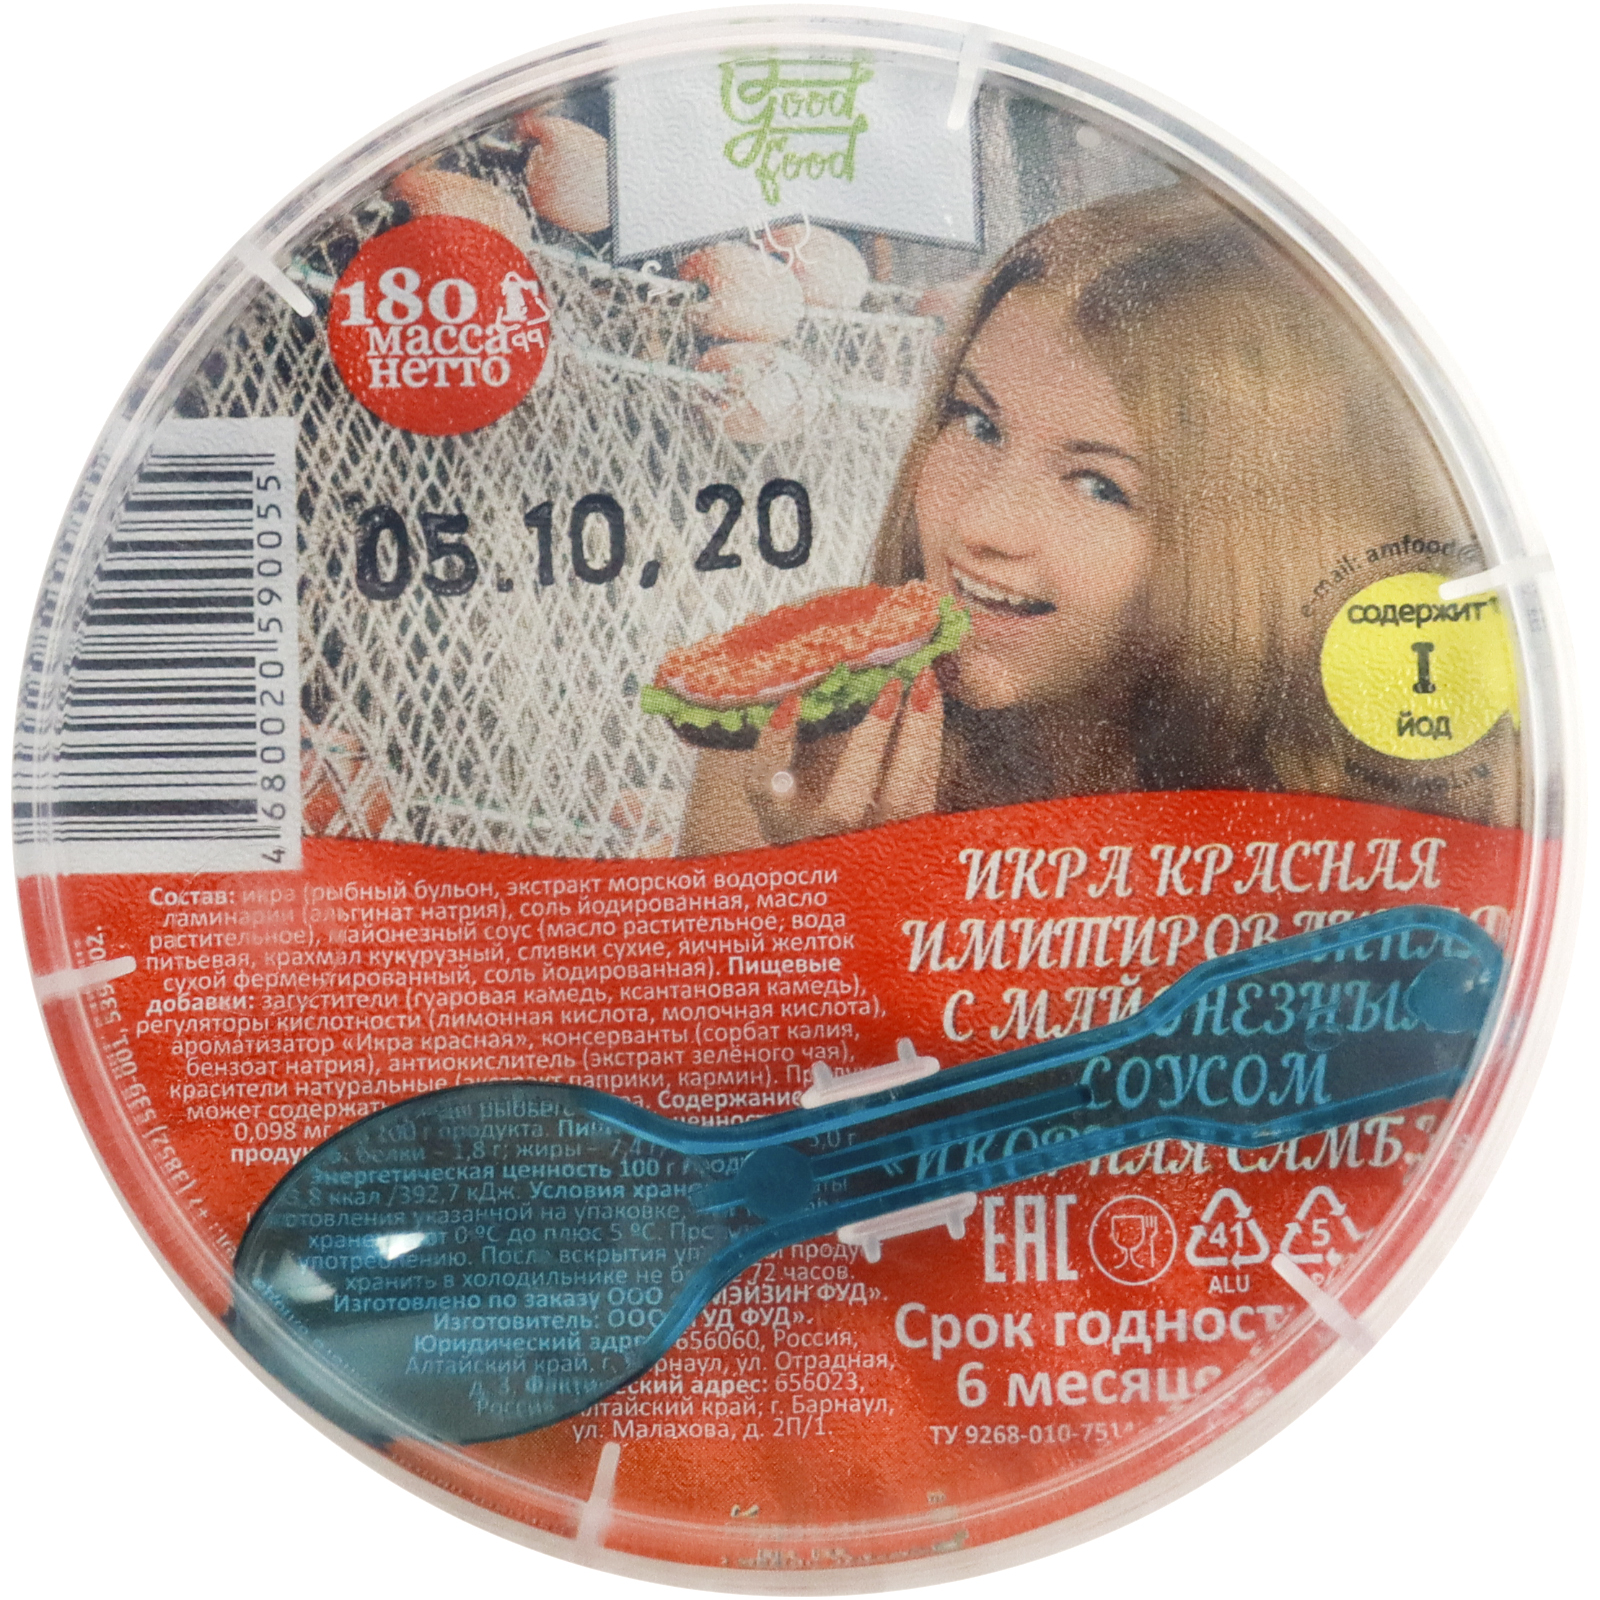 фото Икра красная полезные продукты икорная самба имитированная с майонезным соусом 180 г